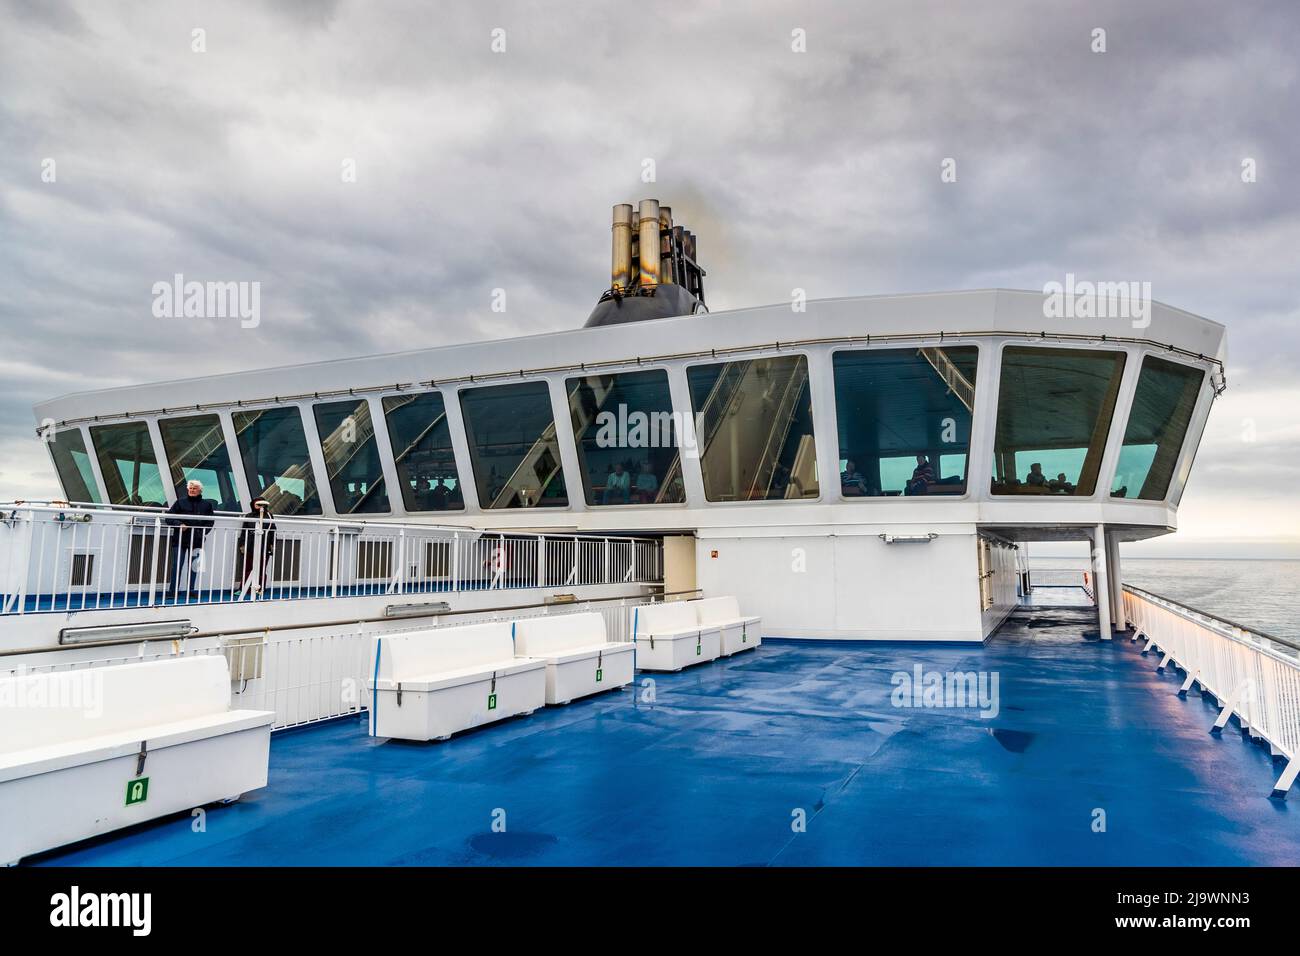 Au-dessus du pont du ferry de la ligne Syril Norröna se trouve le bar Laterna Magica. Il est situé sur le pont 10, à 30 mètres au-dessus de la mer. Pendant le voyage à travers l'Atlantique, voici une vue spectaculaire sur l'océan Banque D'Images